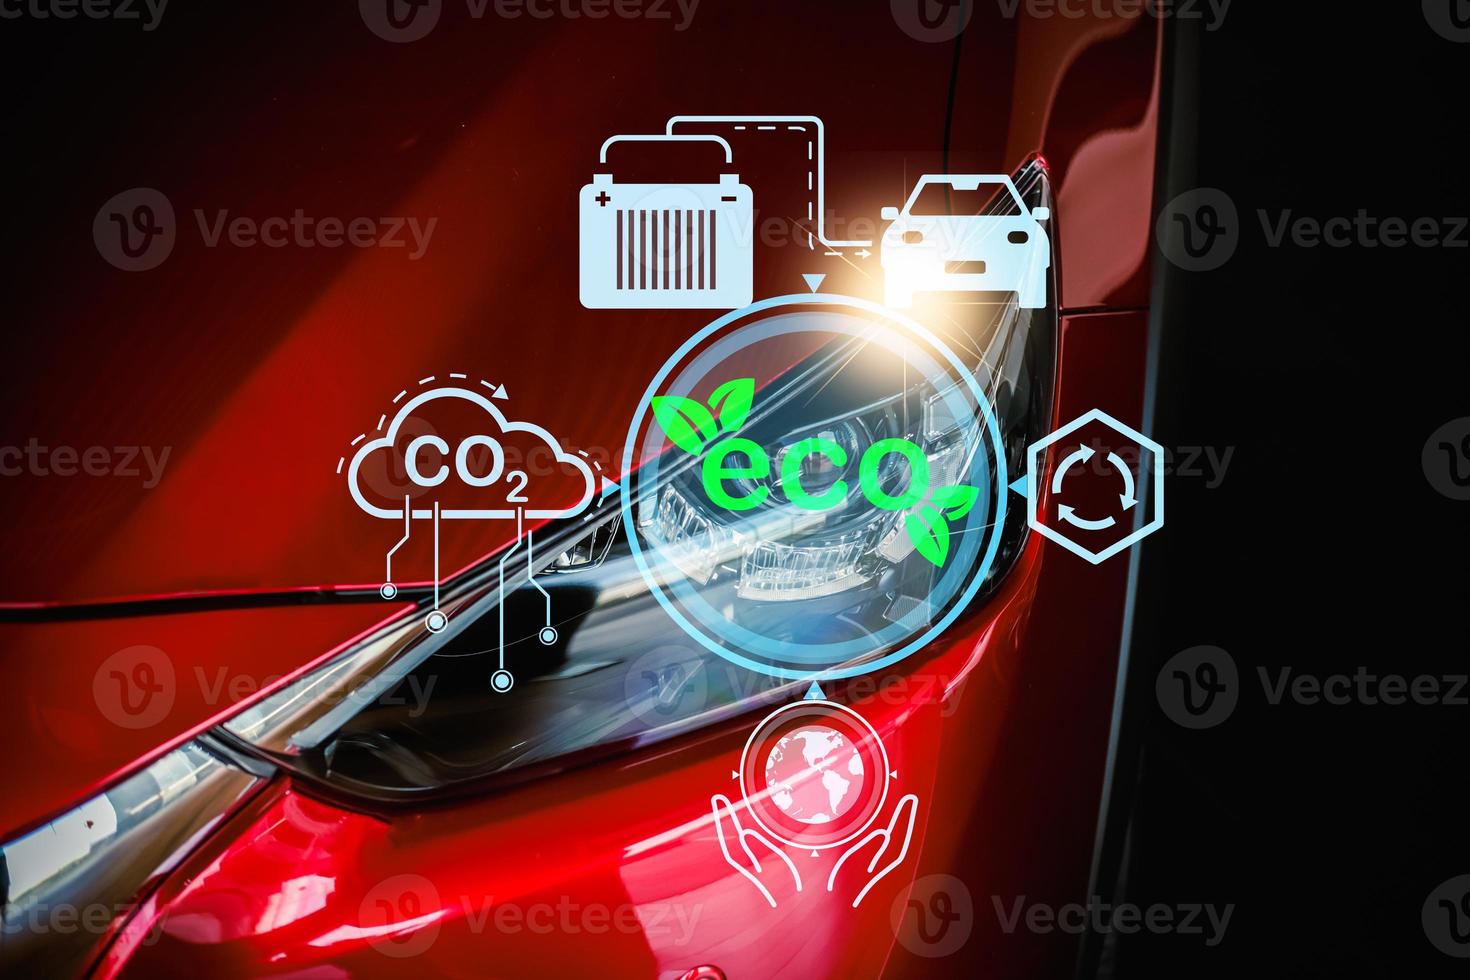 ev eco auto 2023 technologie scherm dashboard auto tech gelukkig nieuw technologie 2023. voor vervoer automotive auto- industrieel en auto bedrijf auto nieuw jaar 2023 technologie auto foto